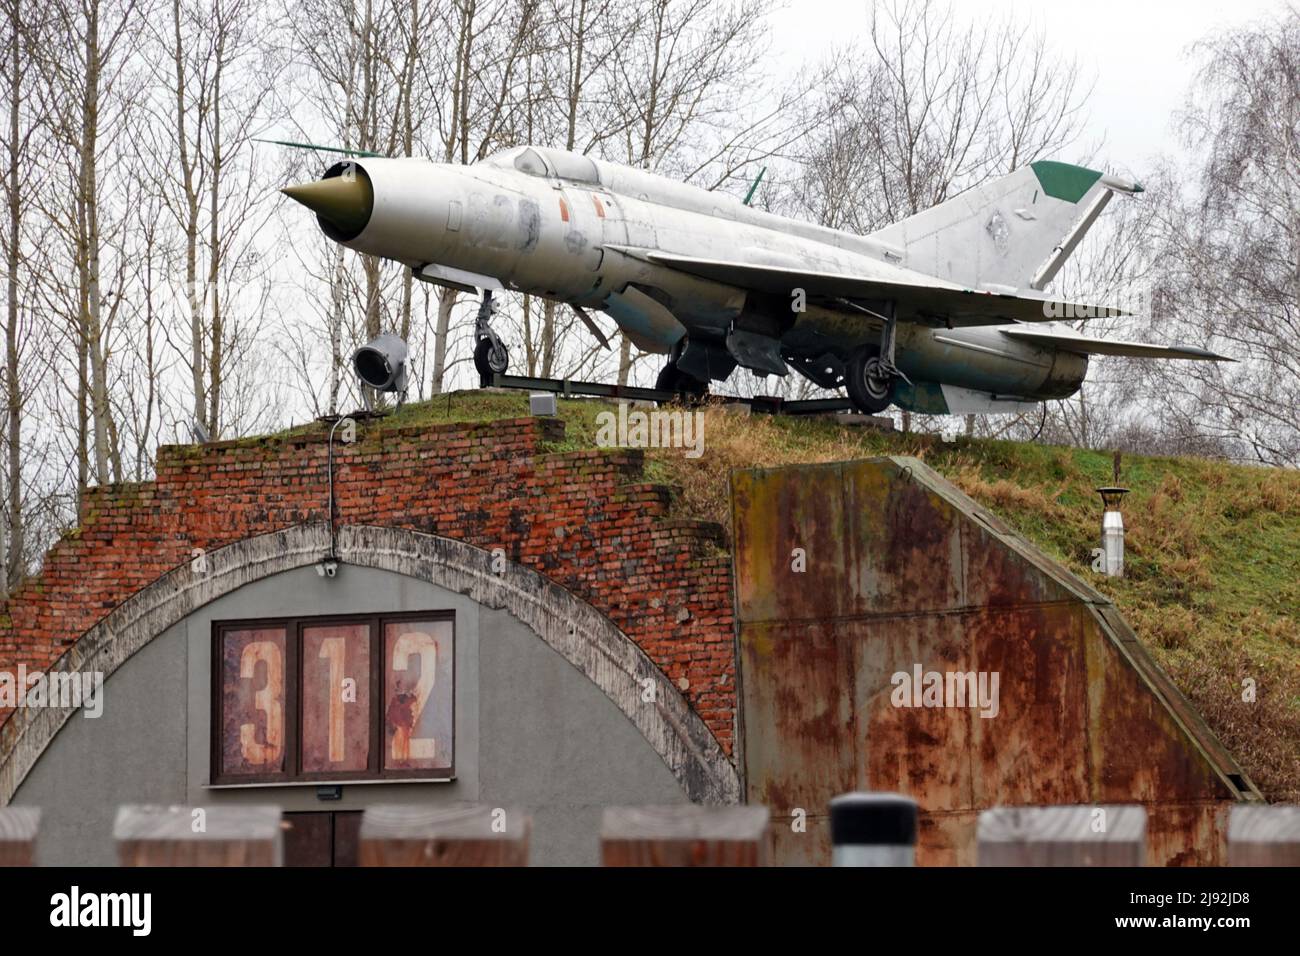 17.12.2021, Neuruppin, Brandenburg, Deutschland - ausgediente MiG 21 auf dem Dach eines Flugzeughangars. 00S211217D421CAROEX.JPG [MODELLVERSION: NEIN, EIGENTUM R Stockfoto